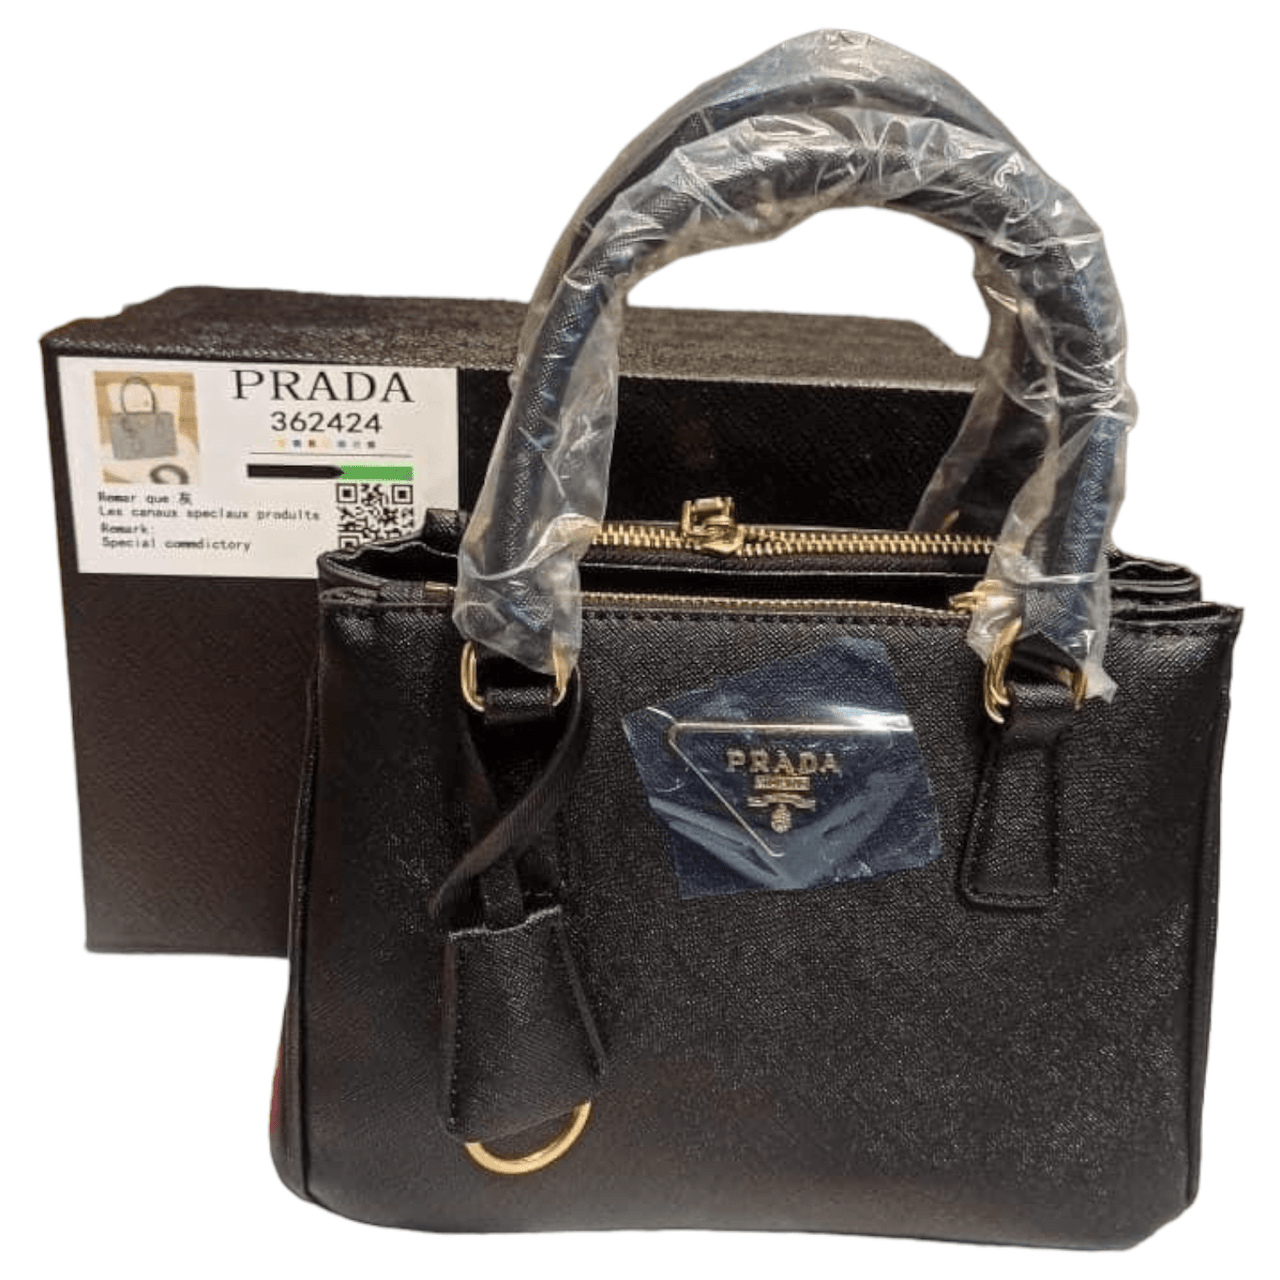 The Bag Couture Handbags, Wallets & Cases PRADA Luxe Du Jour Safiano Small Handbag Black